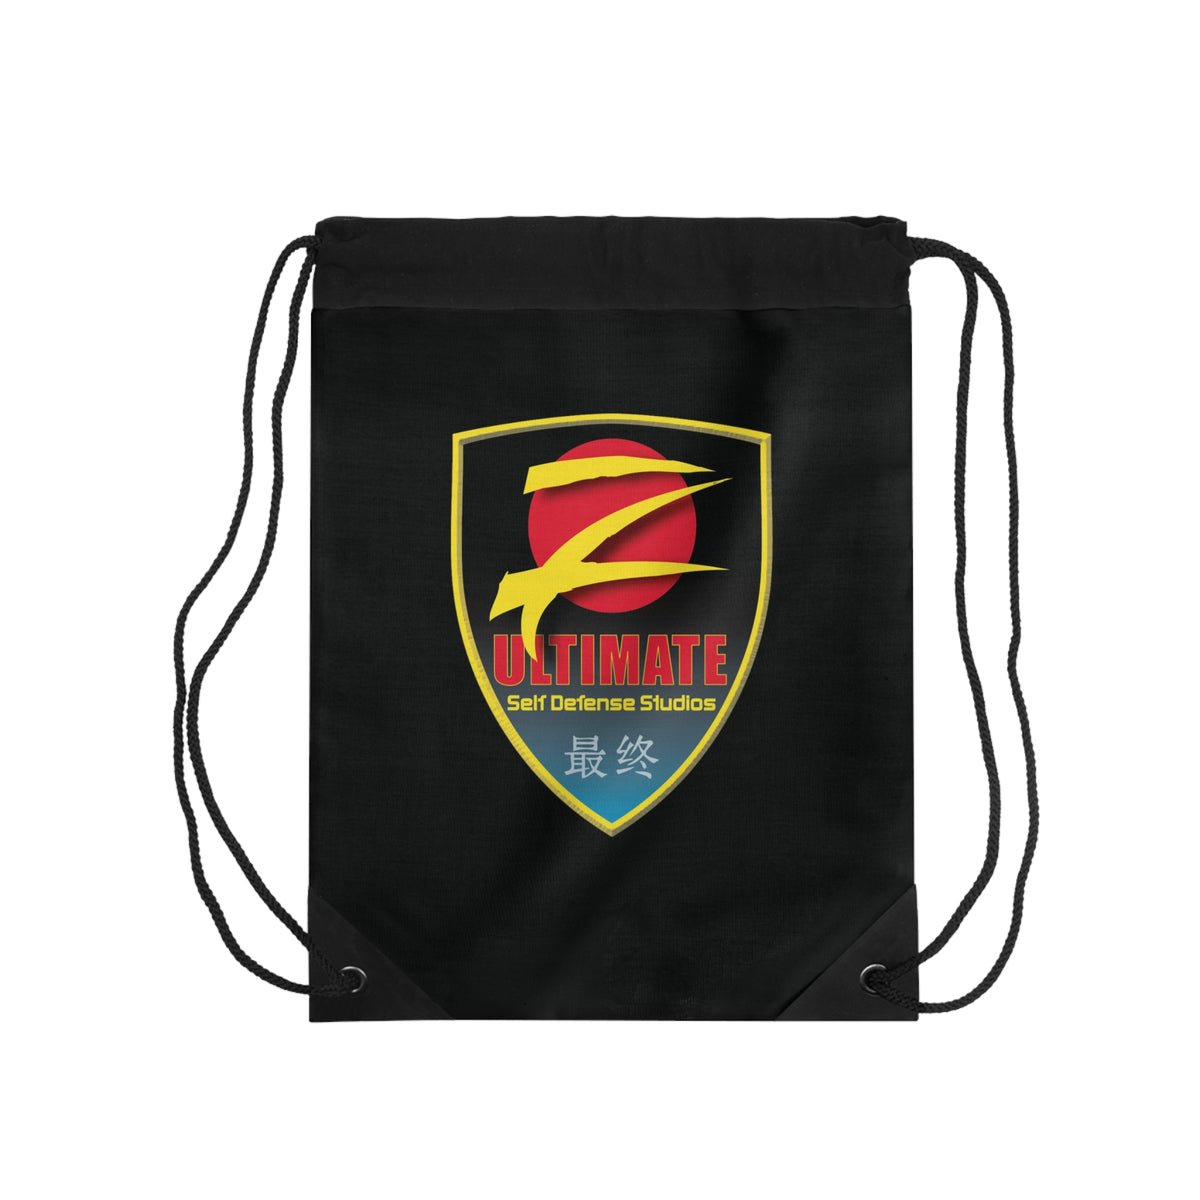 Z-Ultimate Shield Logo Black Drawstring Bag